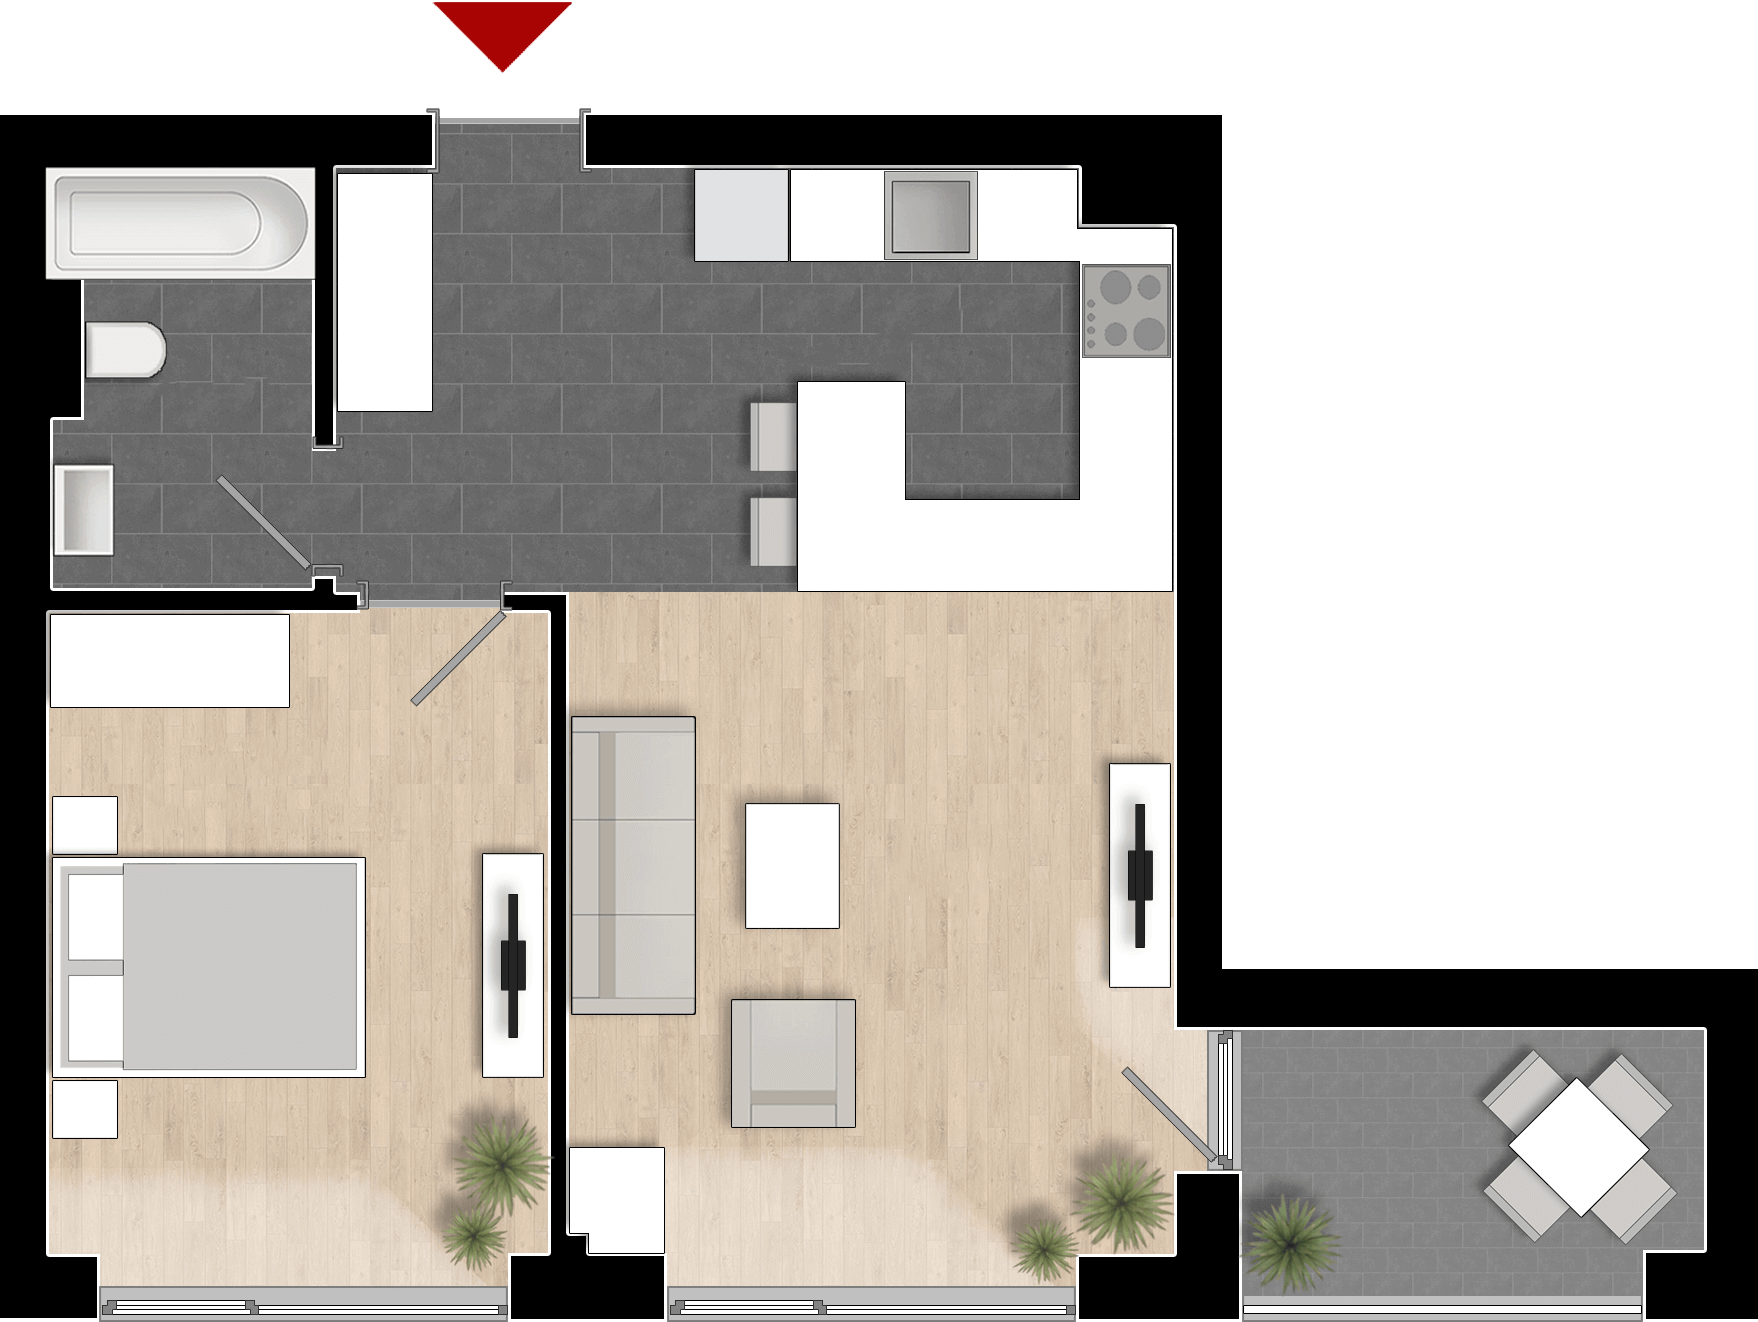  Apartament 201, Tip de apartament 1A cu 2 camere 